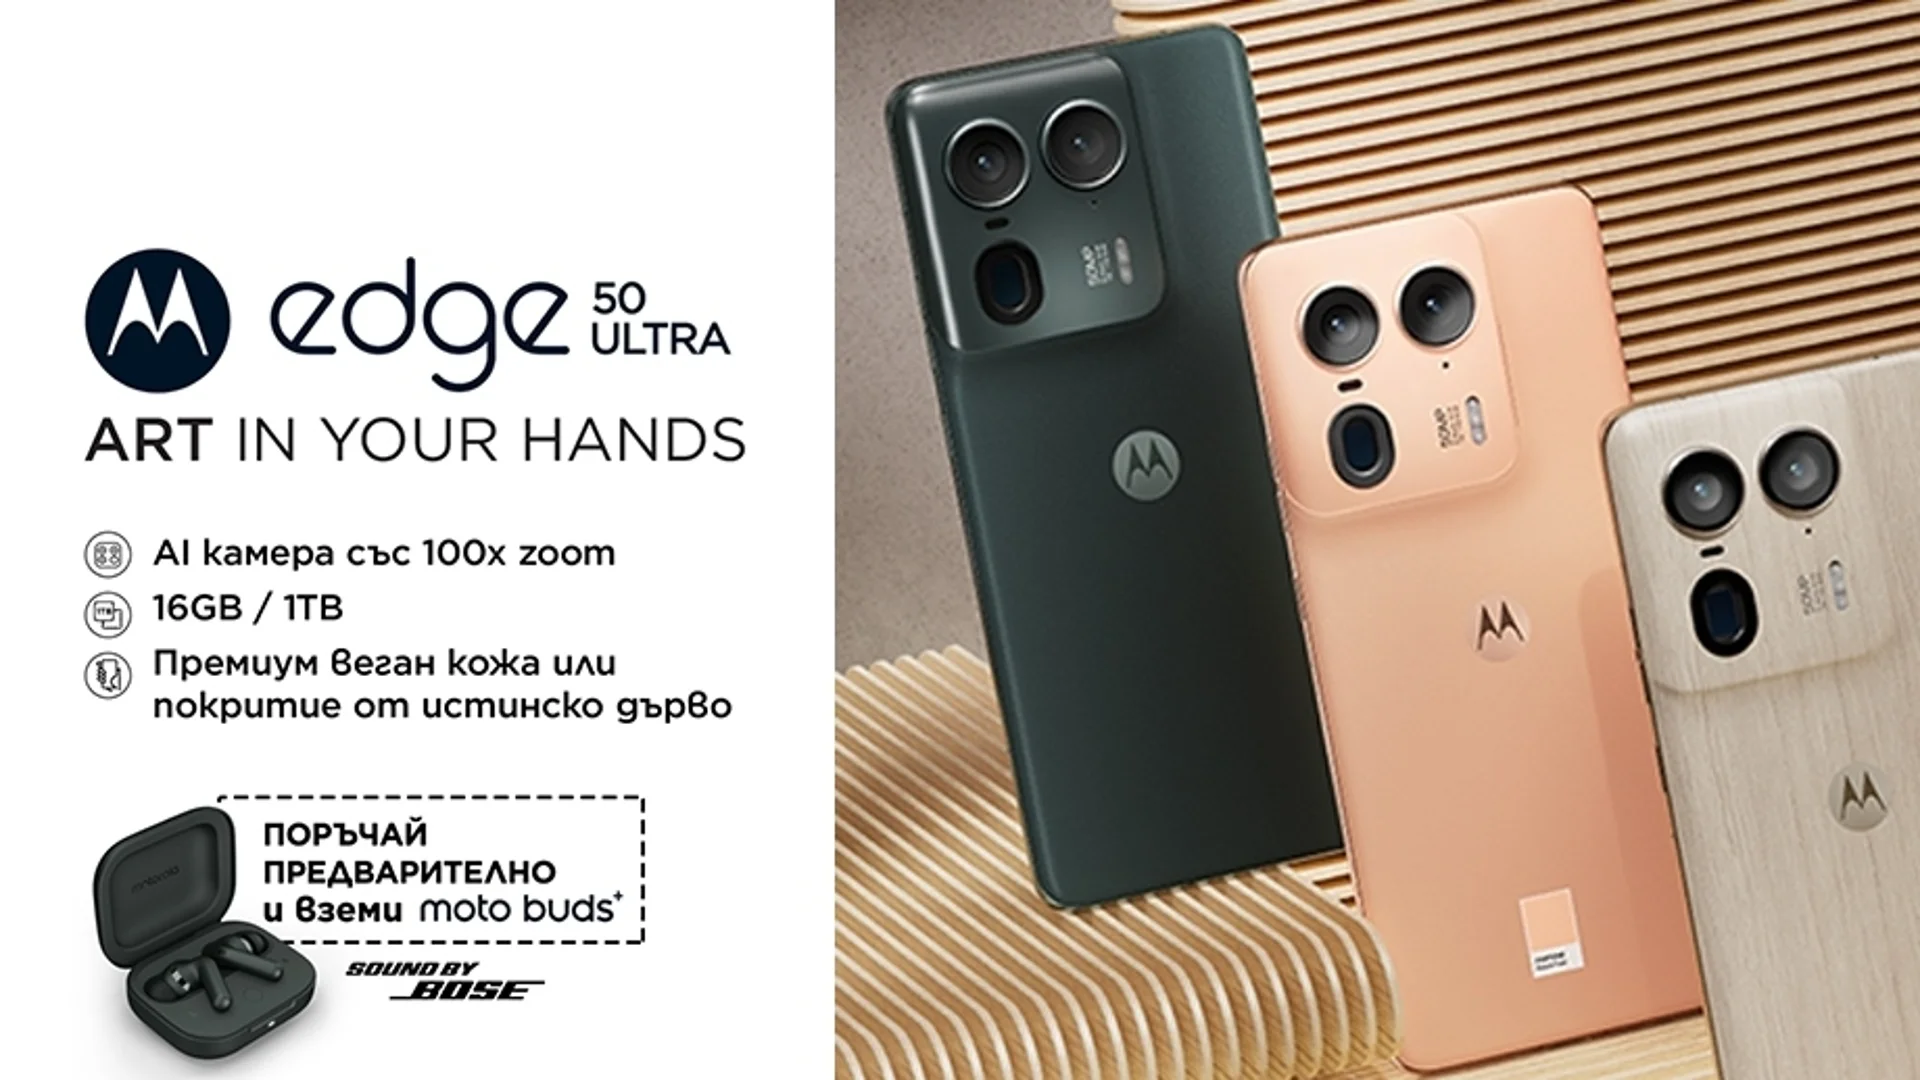 Yettel приема предварителни поръчки за артистичния флагман с отлична камера Motorola edge 50 ultra